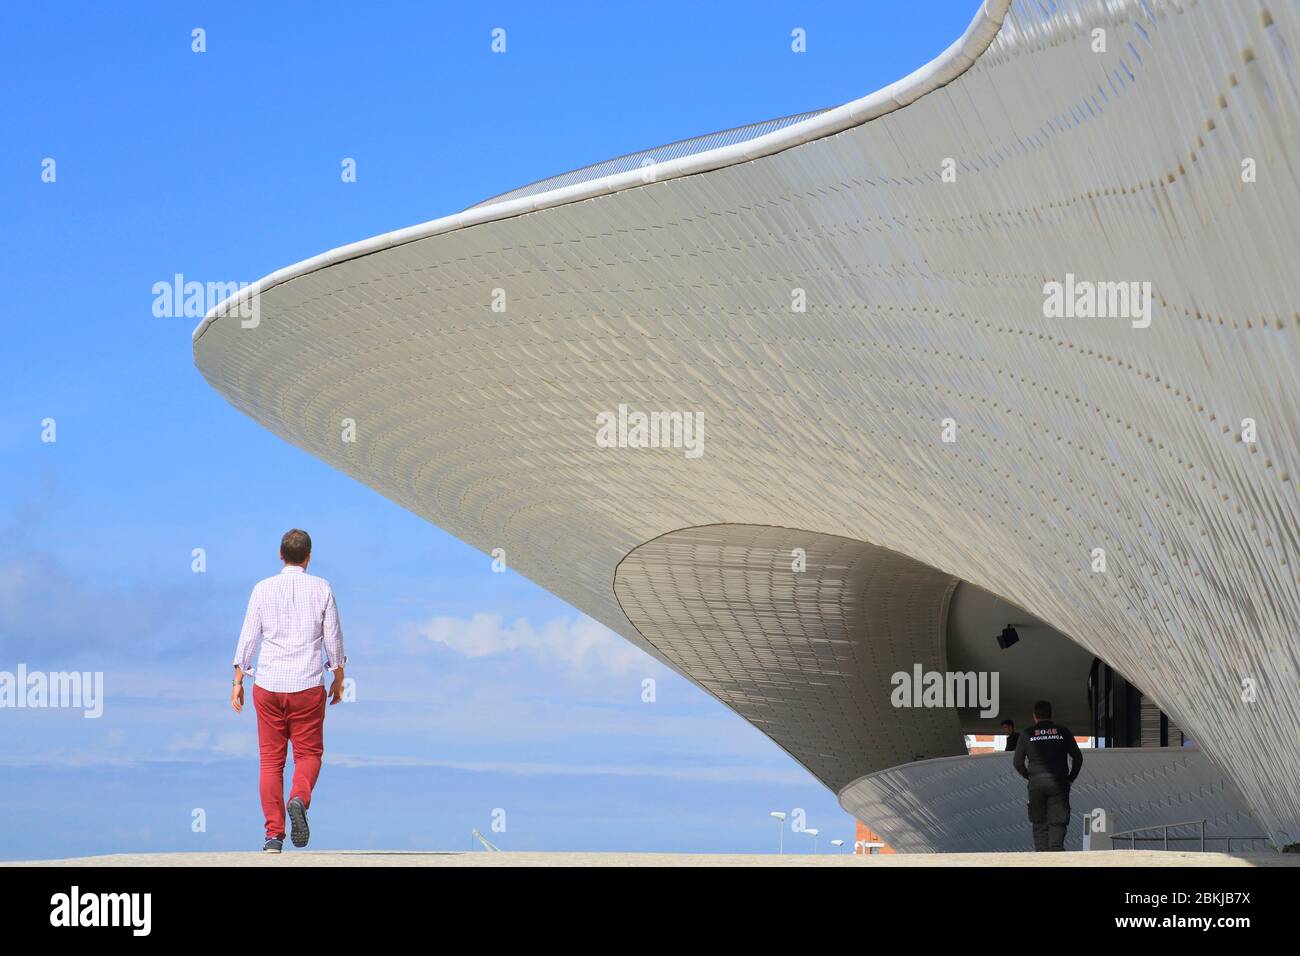 Portugal, Lisbonne, Belém, MAAT (Musée d'Art, d'Architecture et de technologie ou Museu de Arte, Arquitetura e Tecnologia) inauguré en 2016 et conçu par l'architecte britannique Amanda Levete Banque D'Images